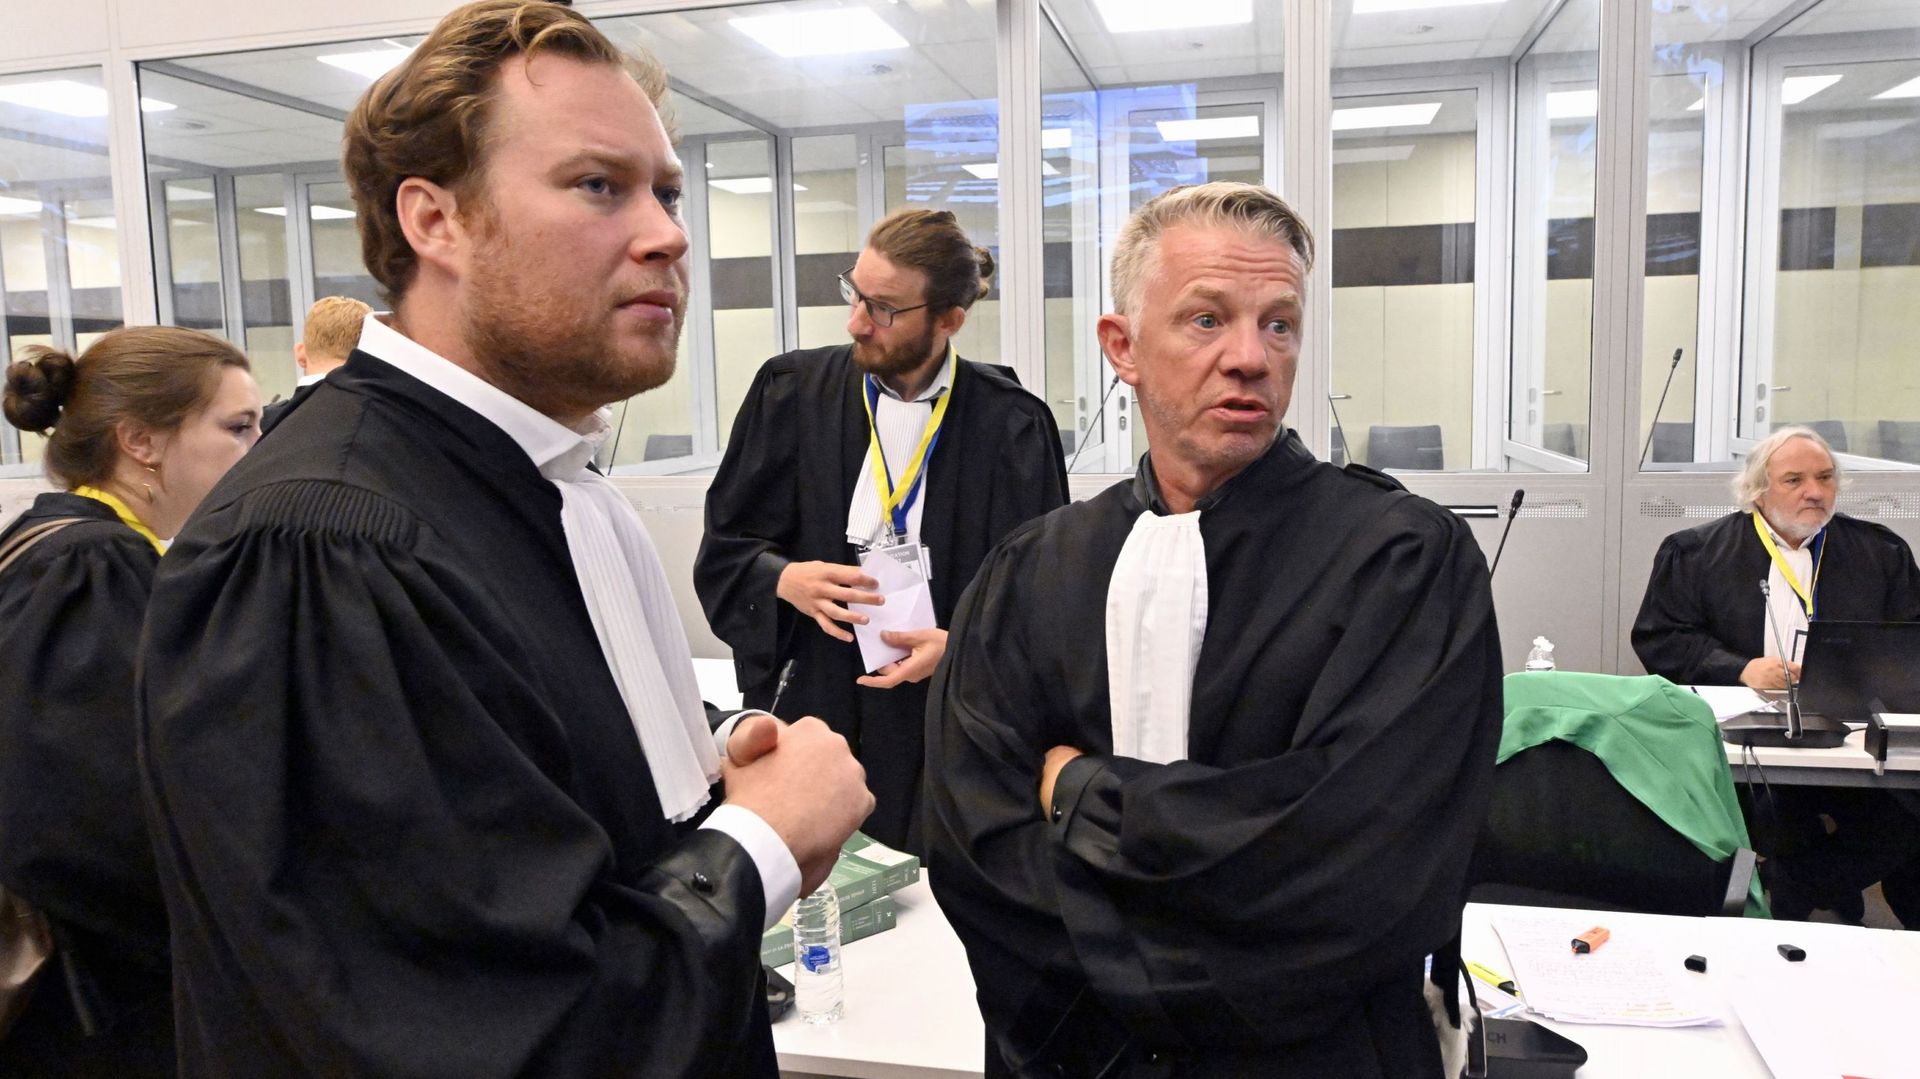 L’avocat Edouard Huysmans et l’avocat Xavier Carrette, défendant Ibrahim Farisi photographiés lors d’une séance préliminaire devant la cour d’assises de Bruxelles-Capitale dans le procès des attentats terroristes du 22 mars 2016 à Bruxelles, lundi 12 sept